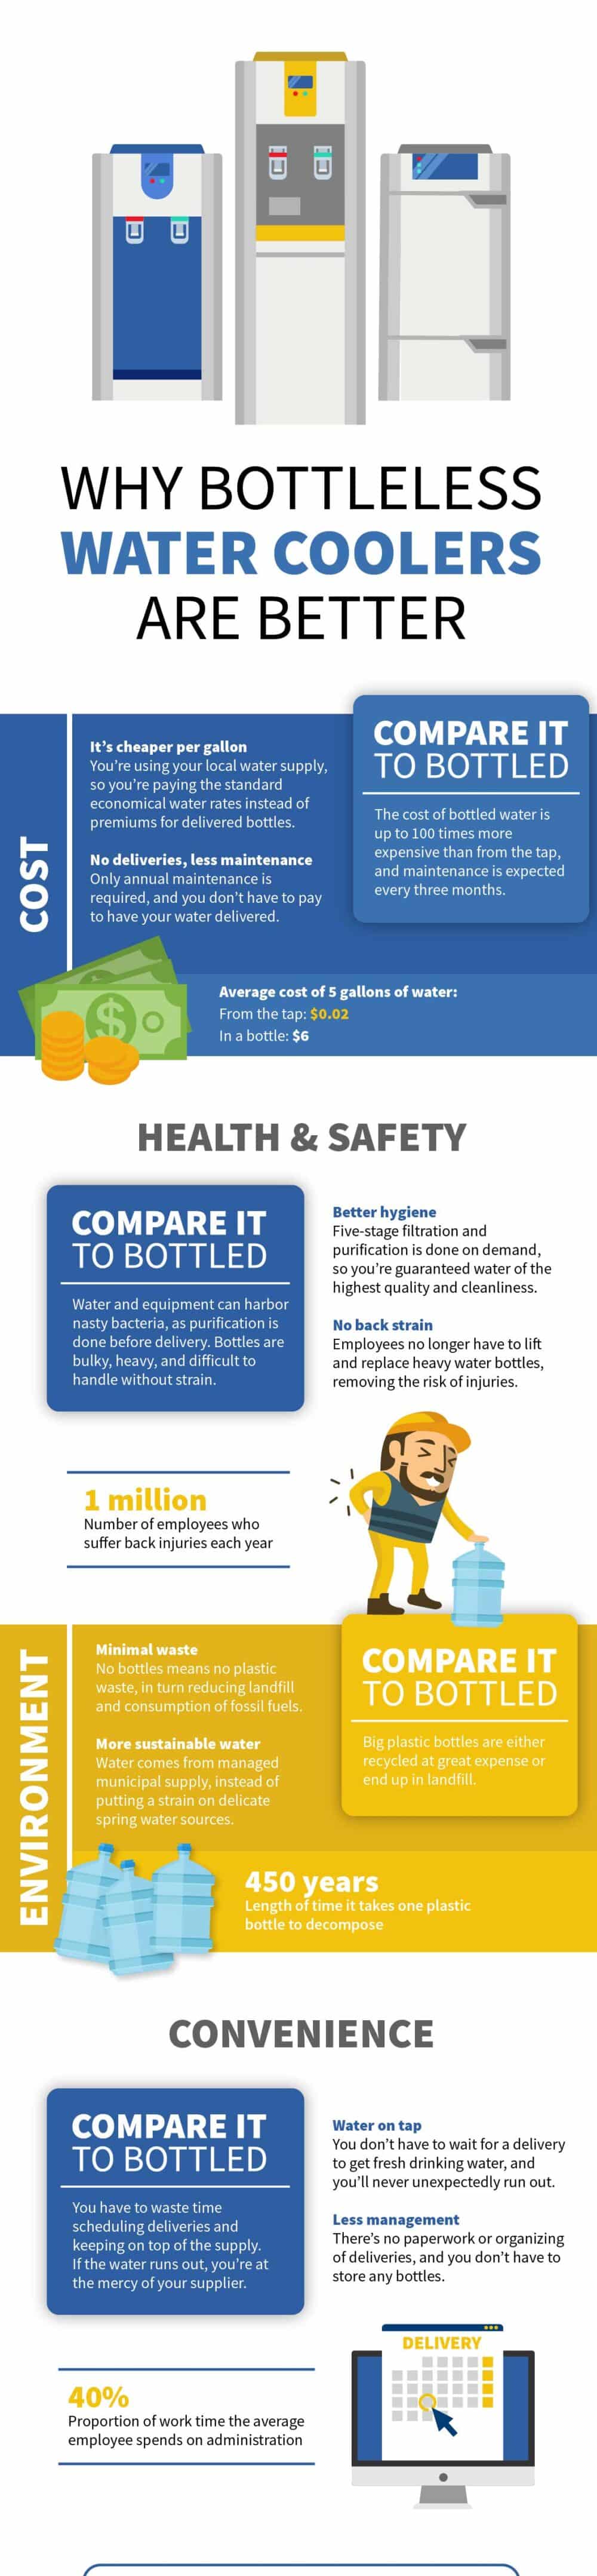 Bottleless water cooler infographic